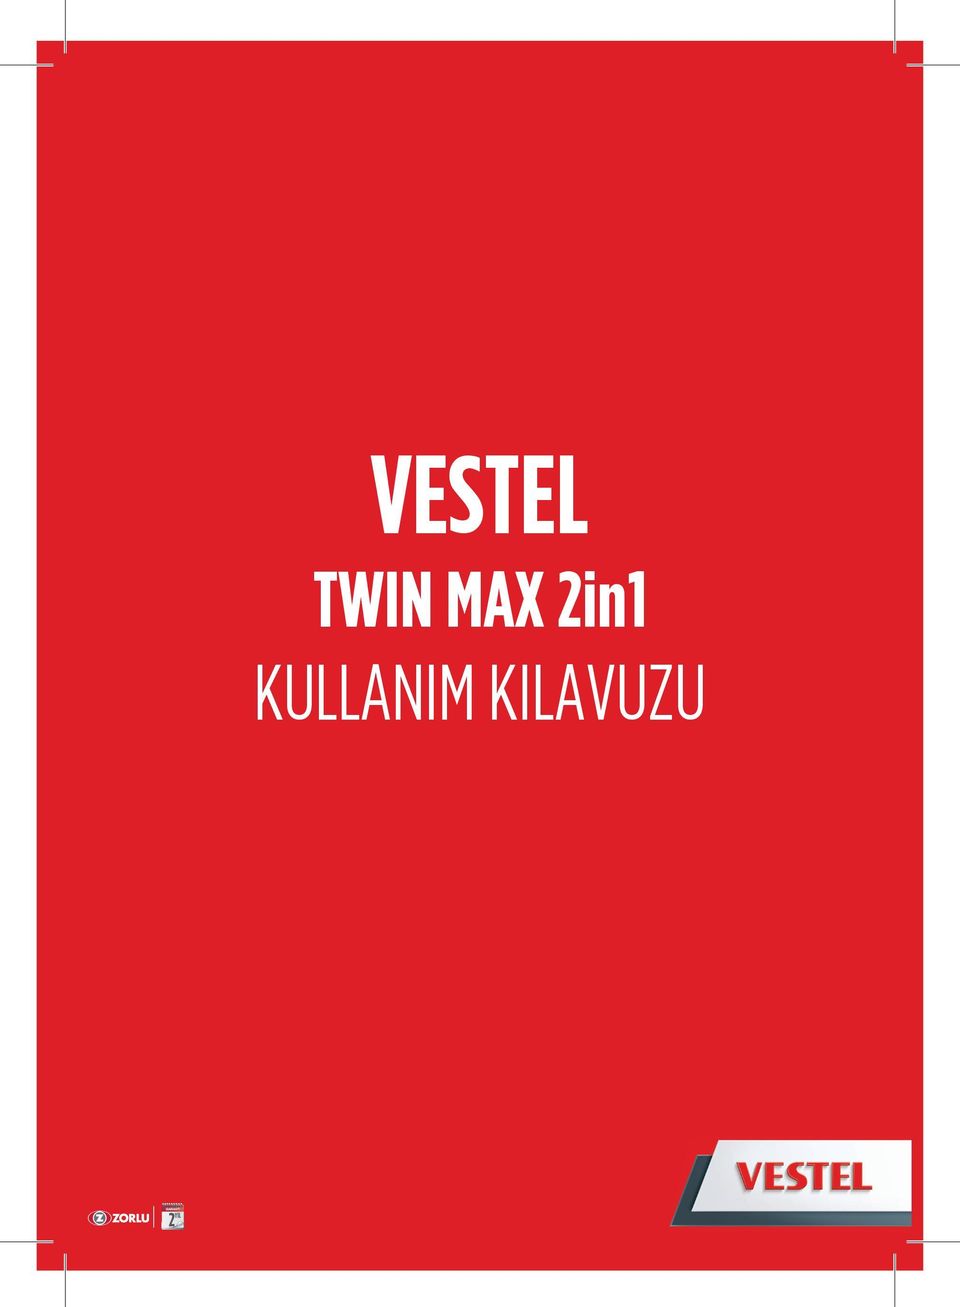 VESTEL. TWIN MAX 2in1 KULLANIM KILAVUZU 2 YIL - PDF Free Download